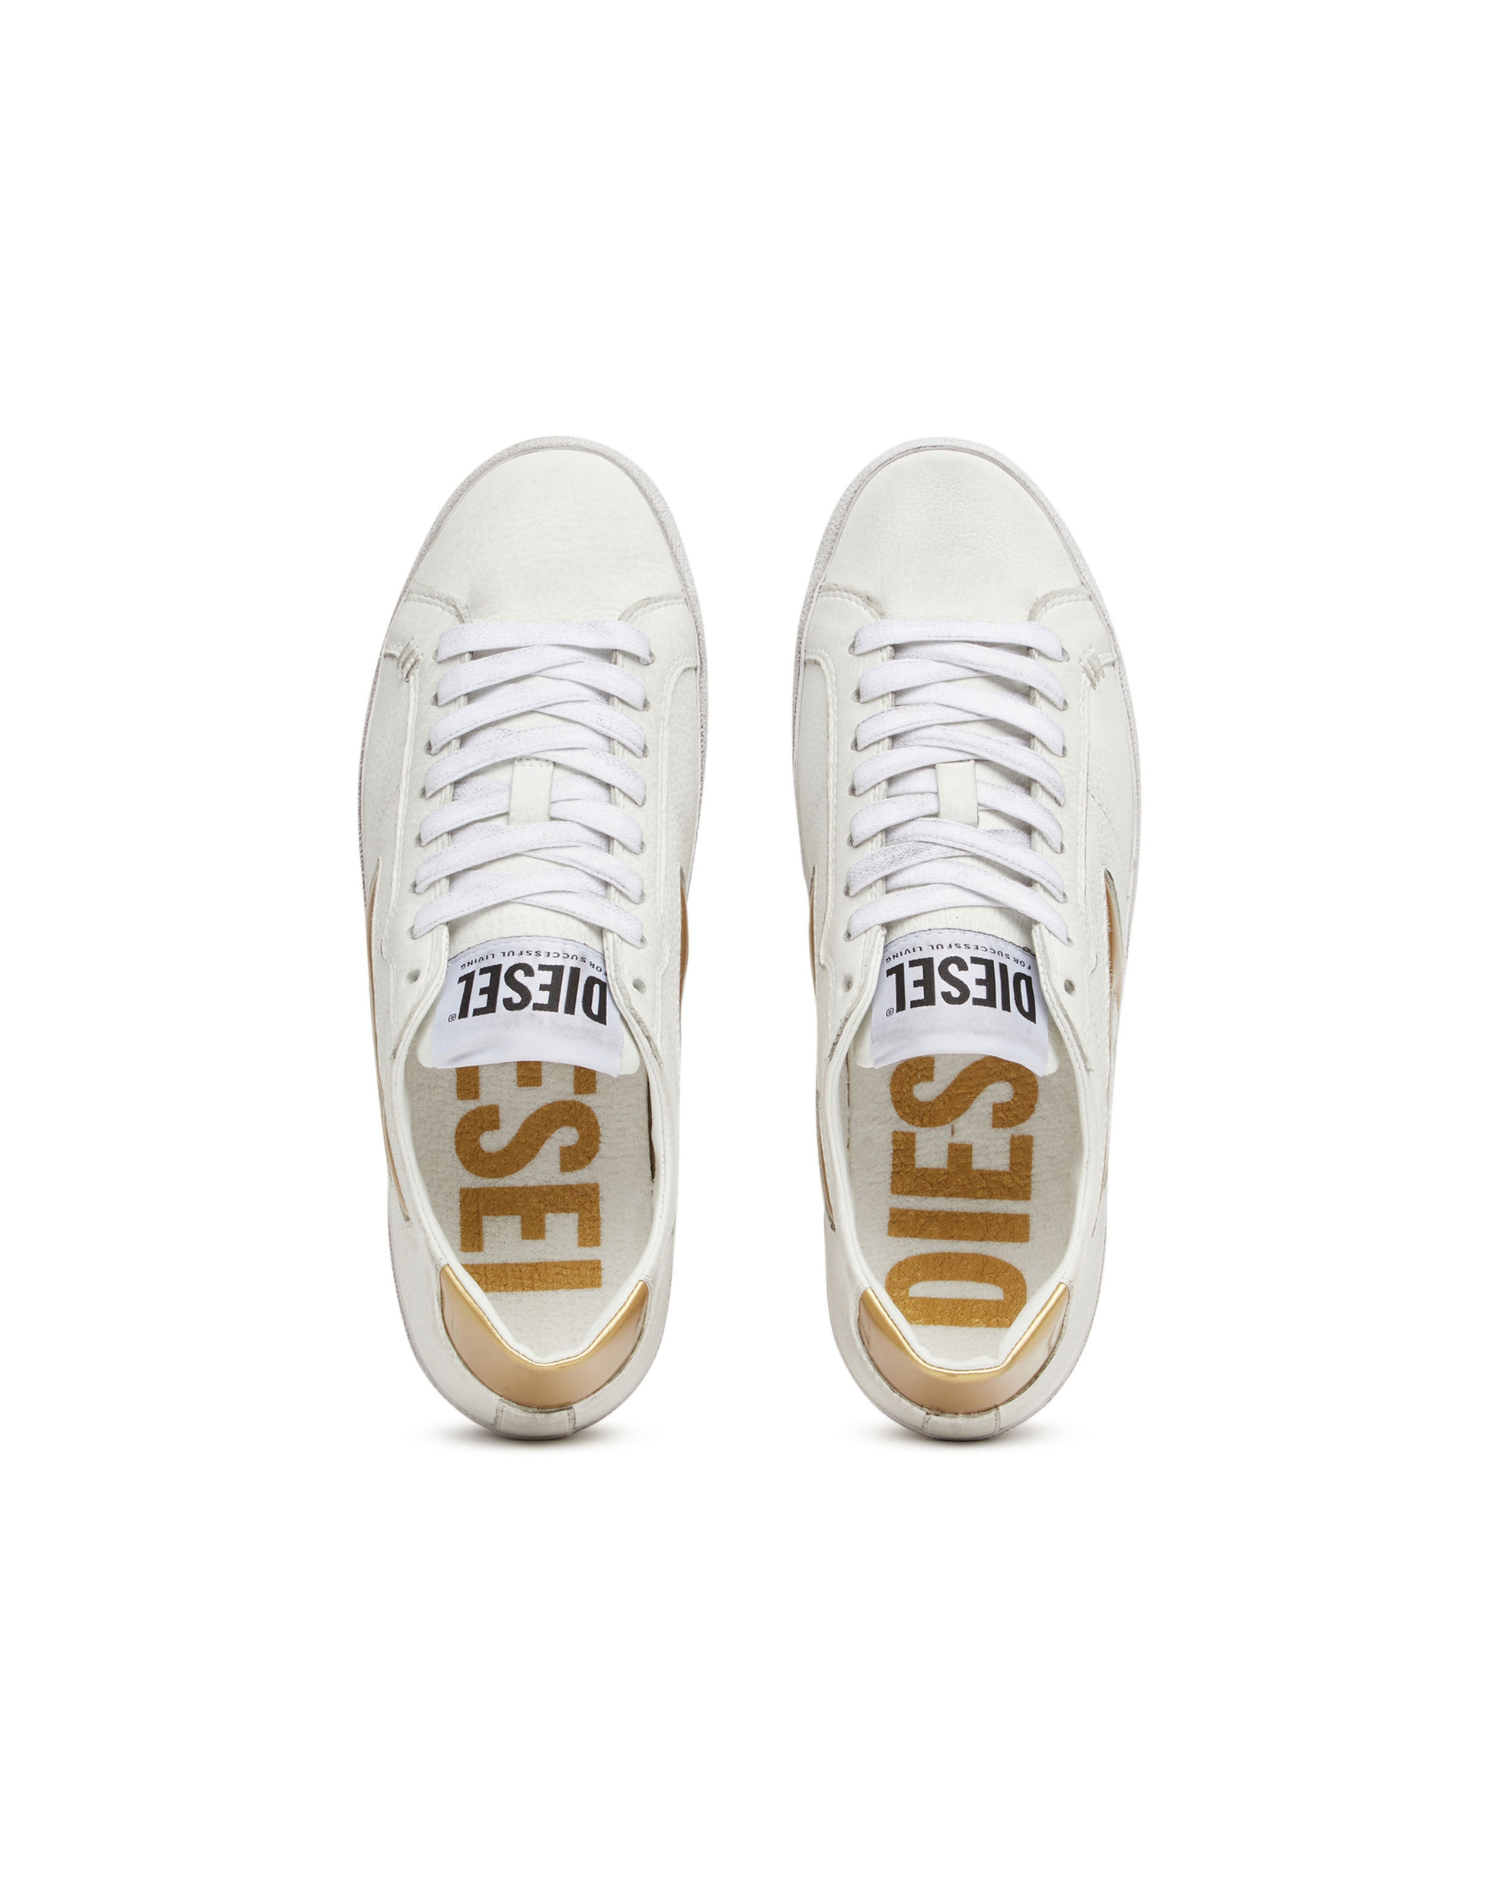 Diesel - S-Leroji Low W Sneakers - White/Gold